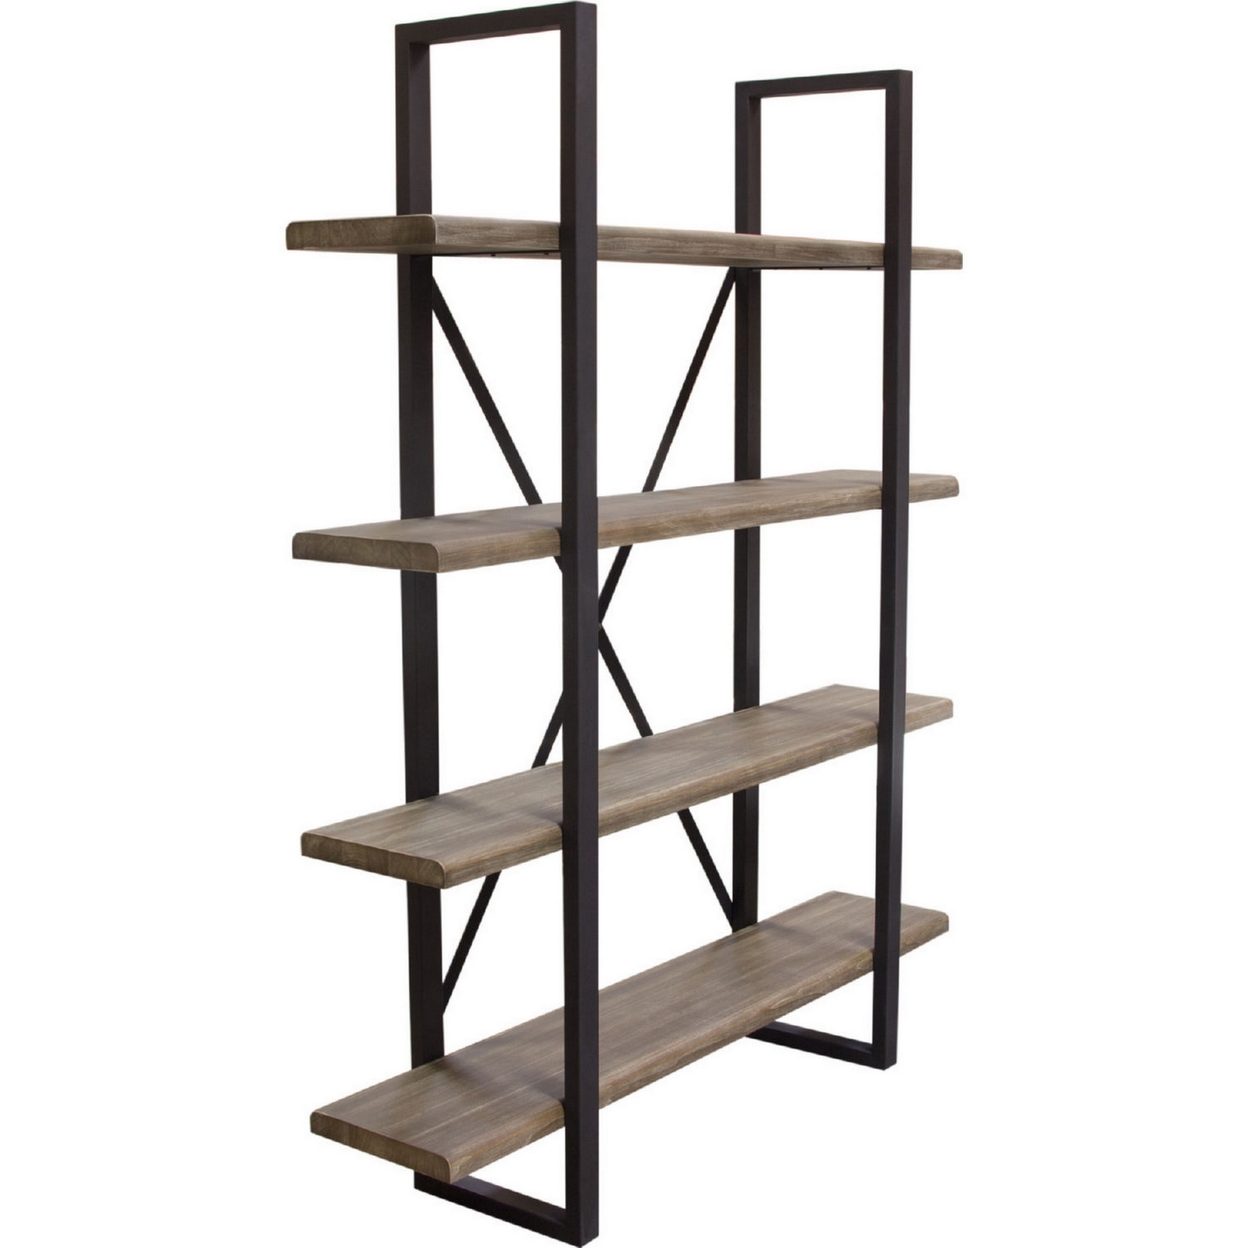 73 Inch Modern Standing Shelf, Industrial Style, 4 Tier, Rustic Oak Brown- Saltoro Sherpi